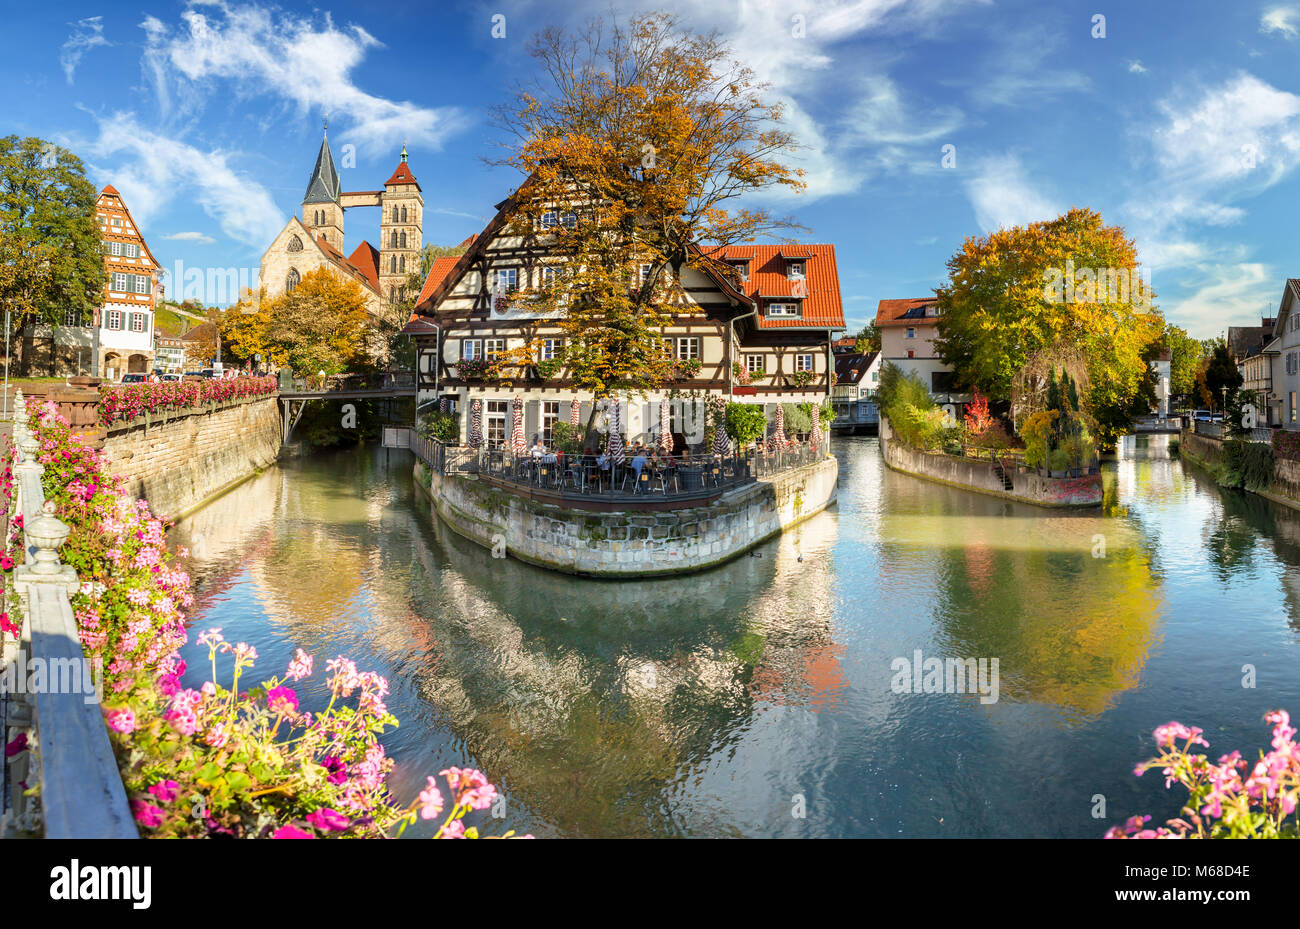 Vista de Esslingen am Neckar historicmedieval ciudad en el sur de Alemania y un famoso destino turístico Foto de stock